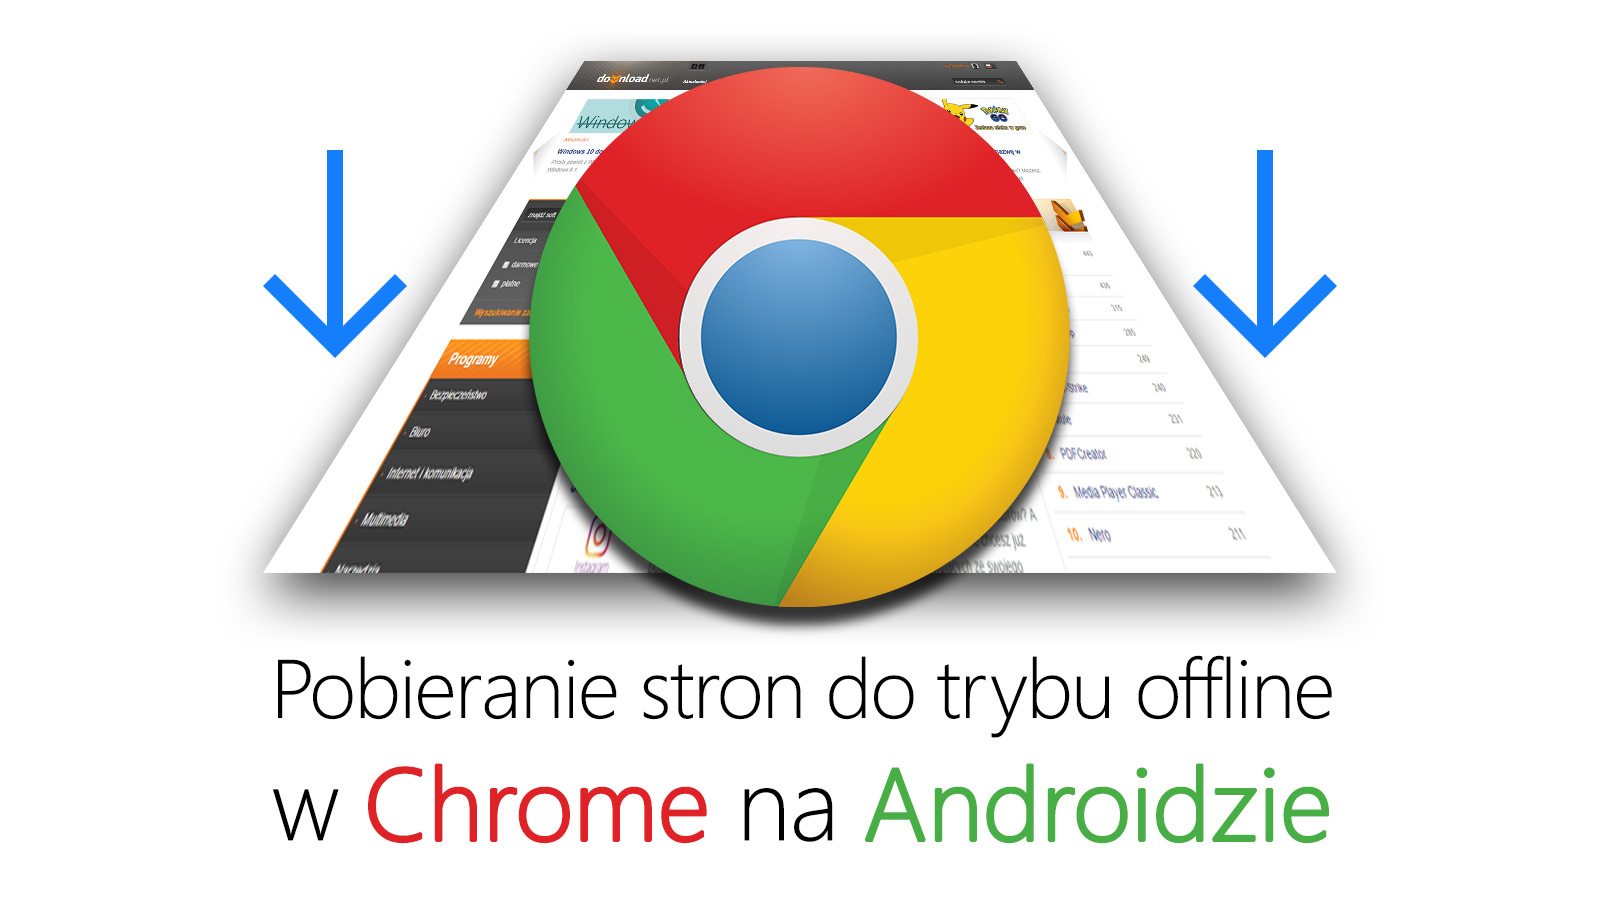 Pobieranie stron do trybu offline w Chrome 55